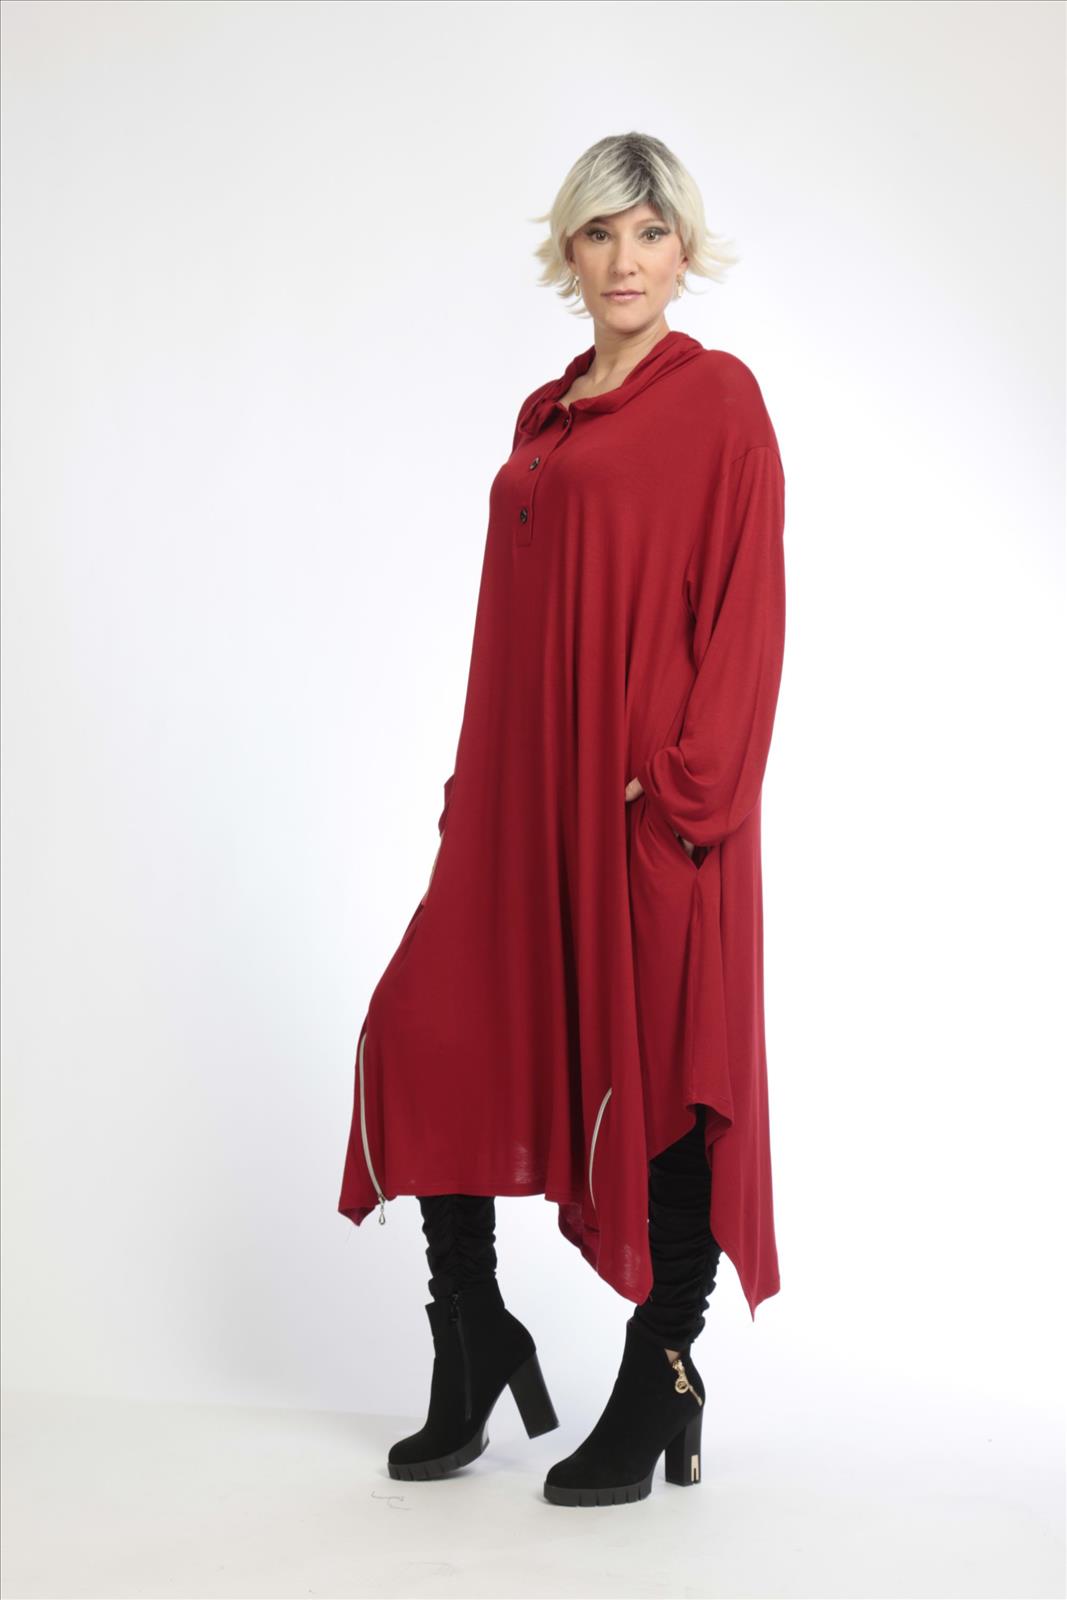 Alltags Kleid in A-Form aus feiner Jersey Qualität, Rot Lagenlook Oversize Mode B2B Großhandel